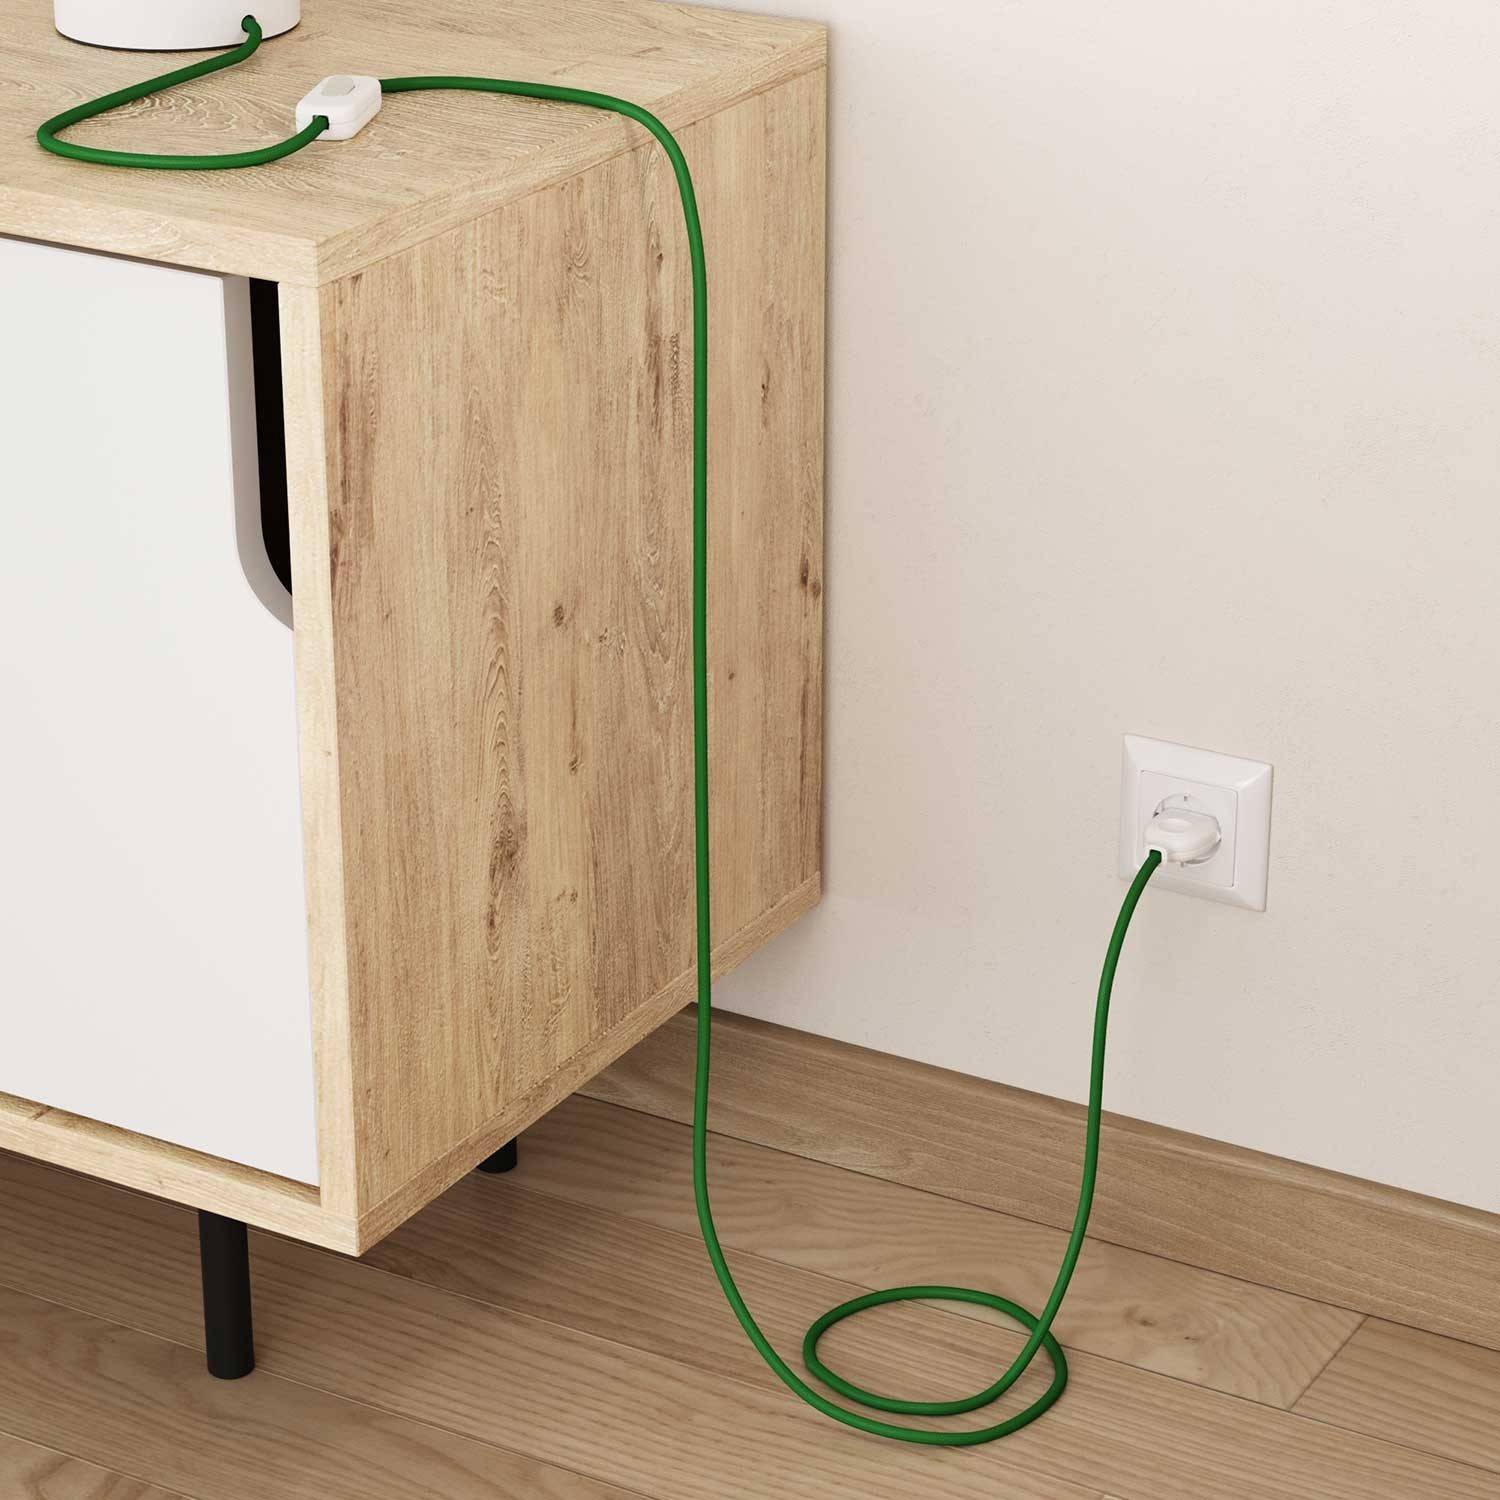 Cablu textil verde lucios pentru electricitate - Originalul Creative-Cables - RM06 rotund 2x0.75mm / 3x0.75mm